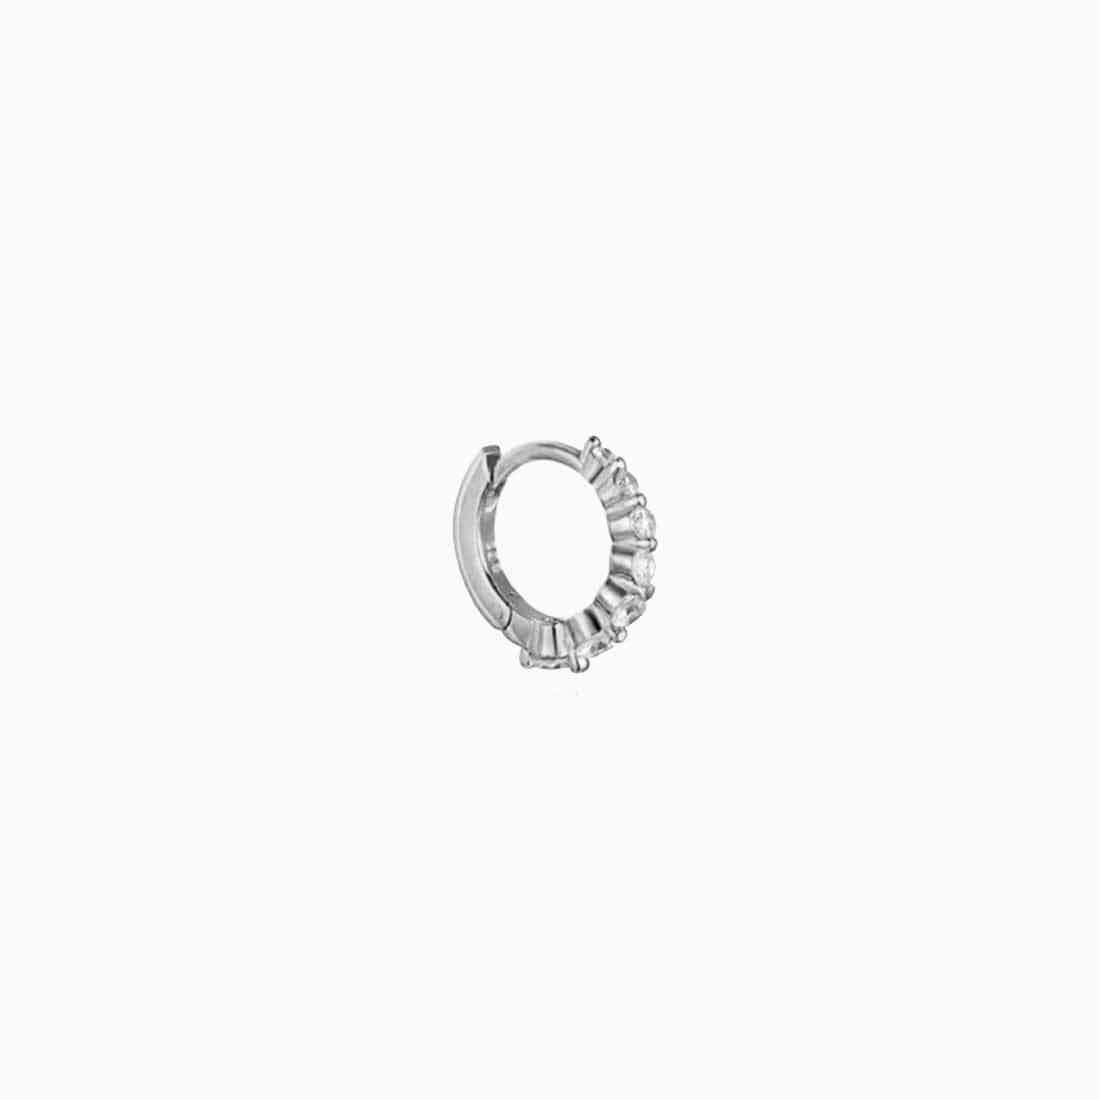 Degrade Ring Zirconias Silver Piercing